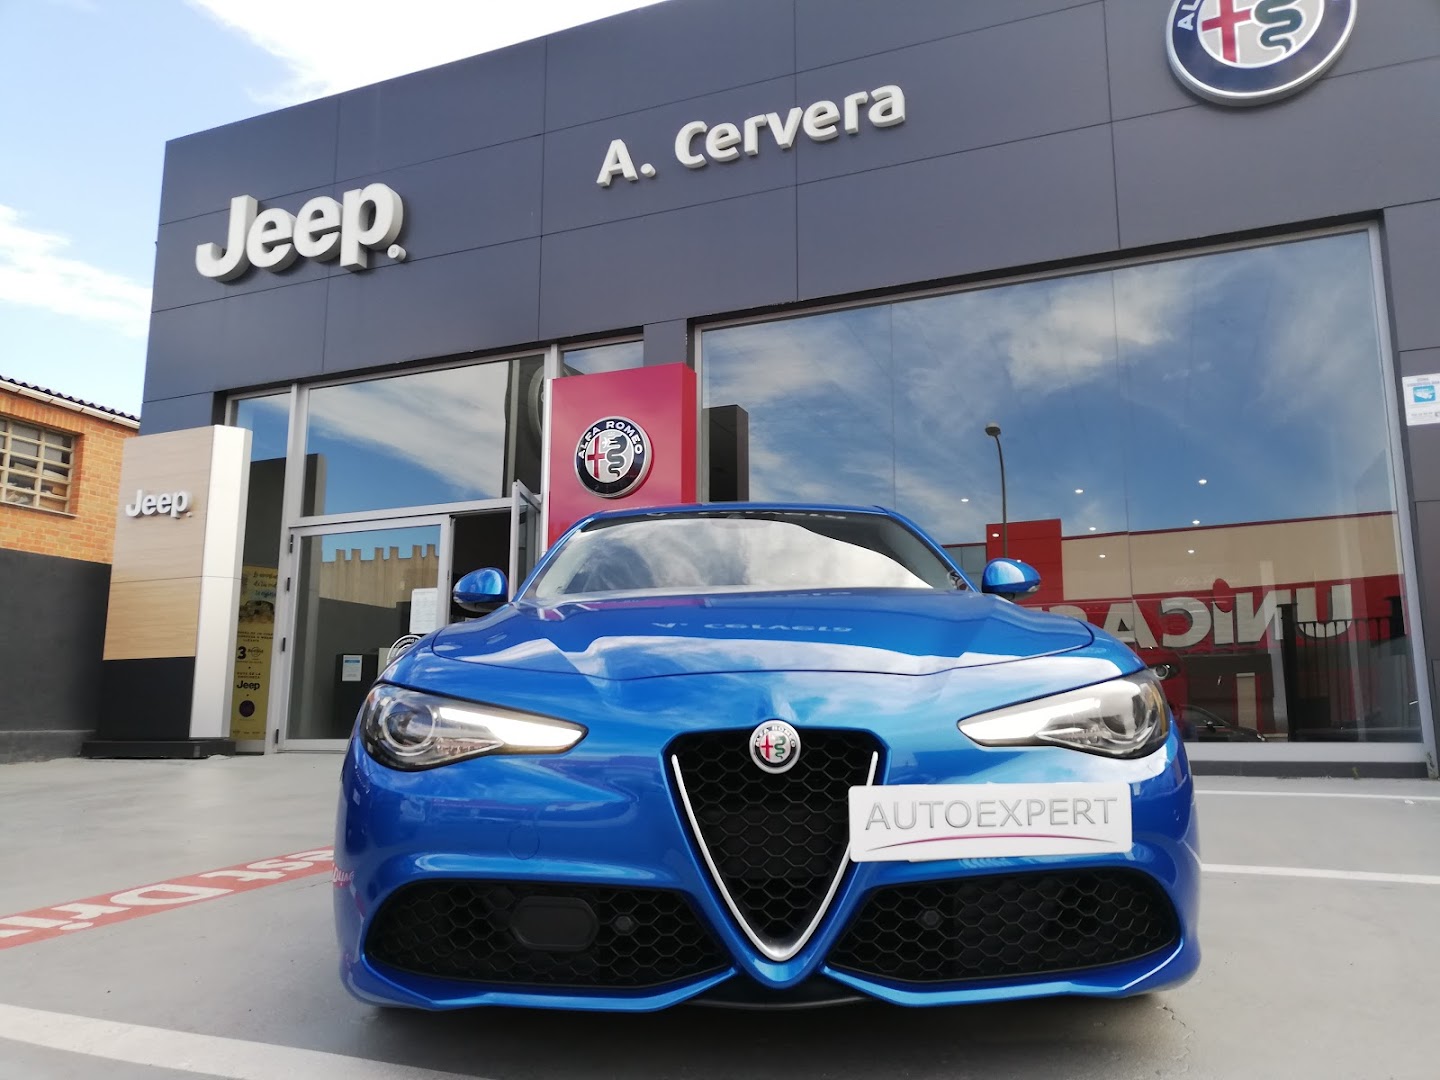 Grupo Cervera (concesionario Alfa Romeo y Jeep)